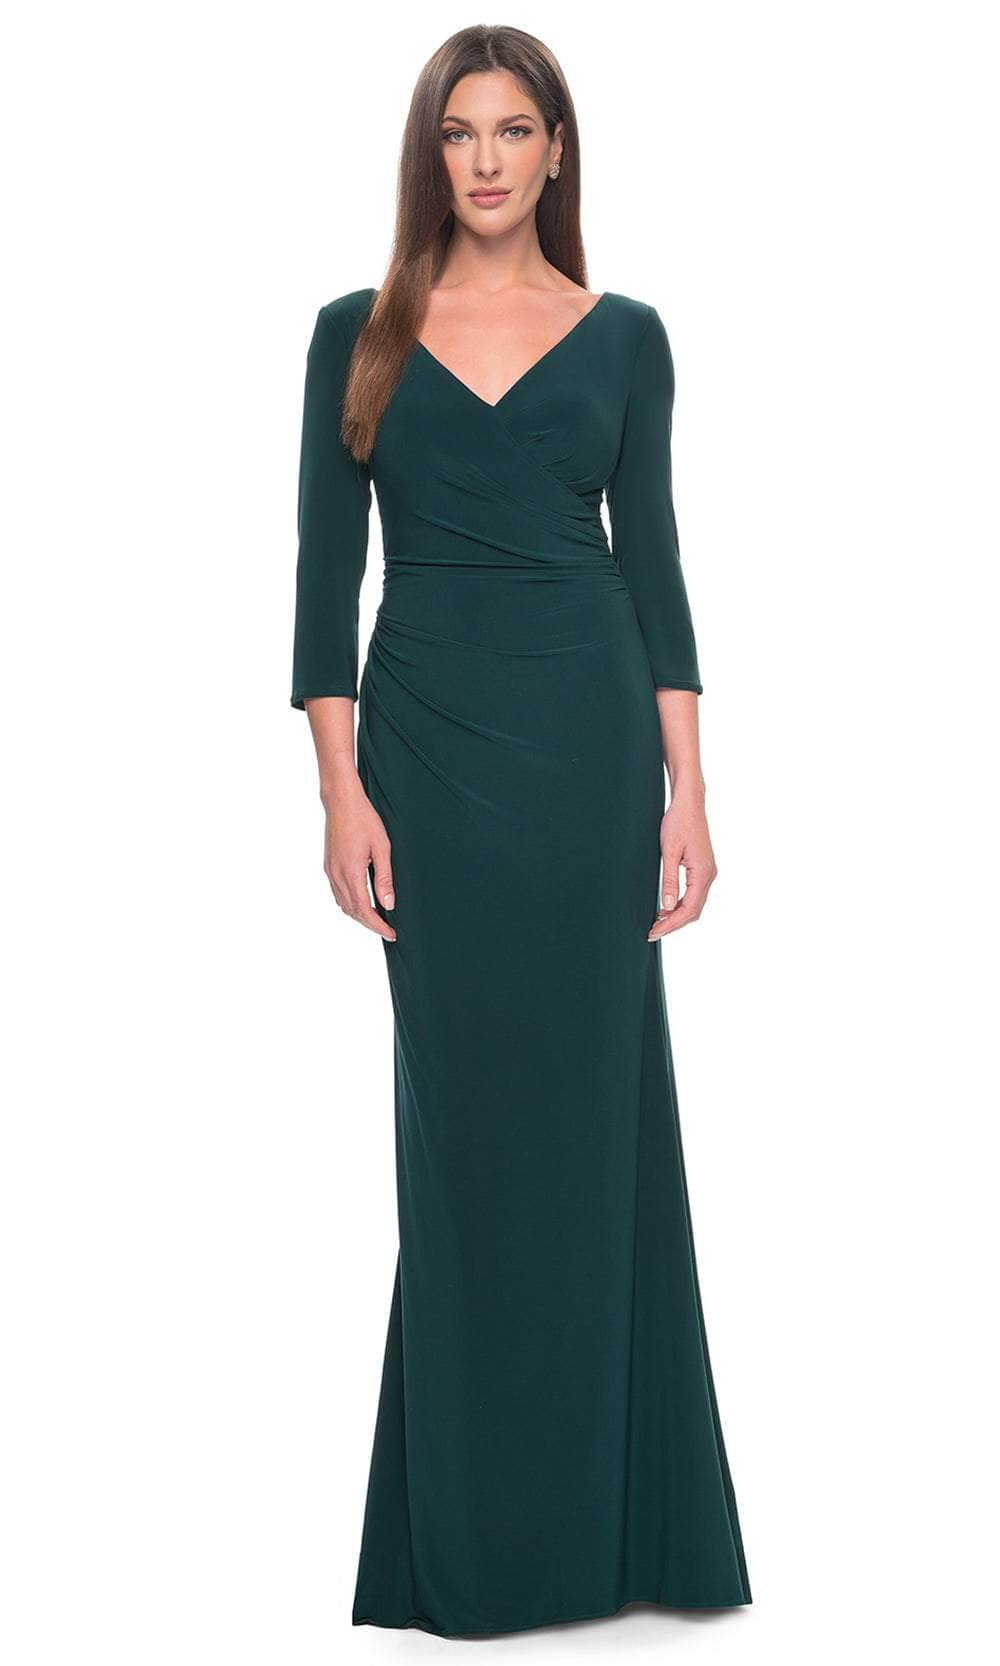 La Femme 31020 - Wrap Jersey Evening Dress Evening Dresses 0 / Hunter Green